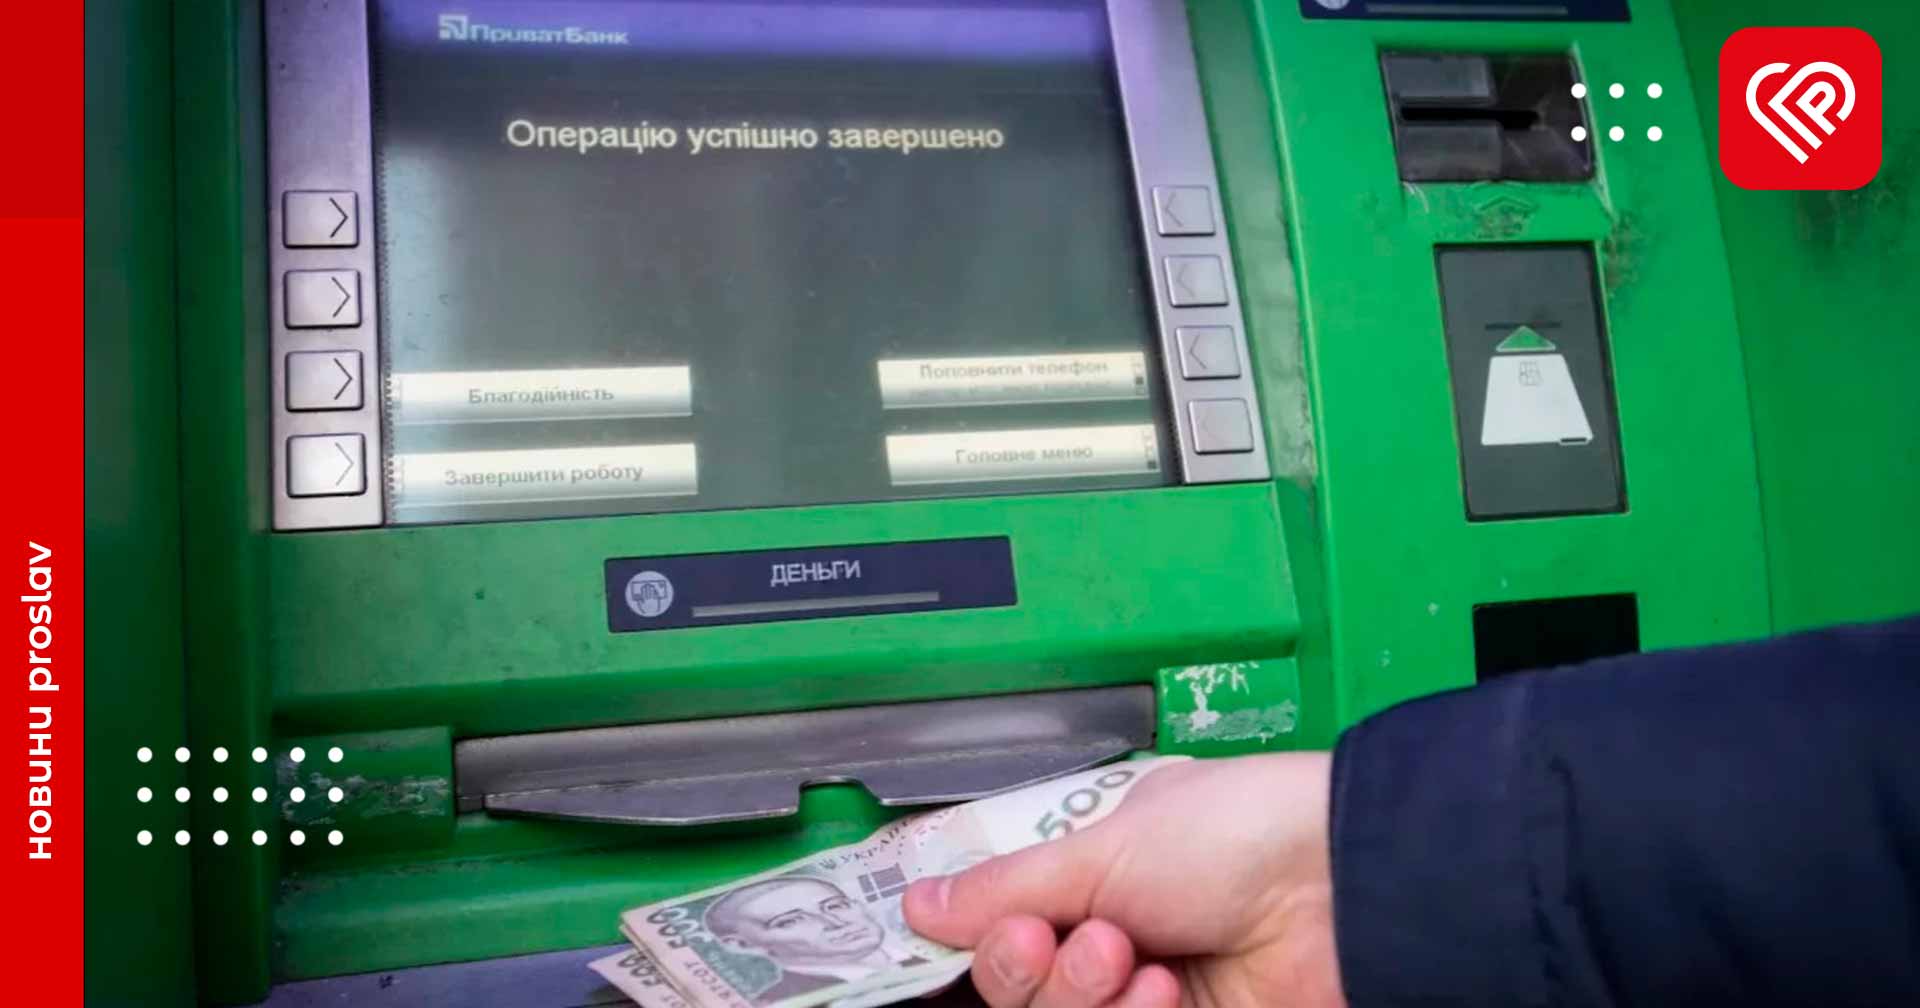 20 000 гривень раз у три години: «ПриватБанк» збільшив ліміт на зняття грошей у банкоматах за один раз